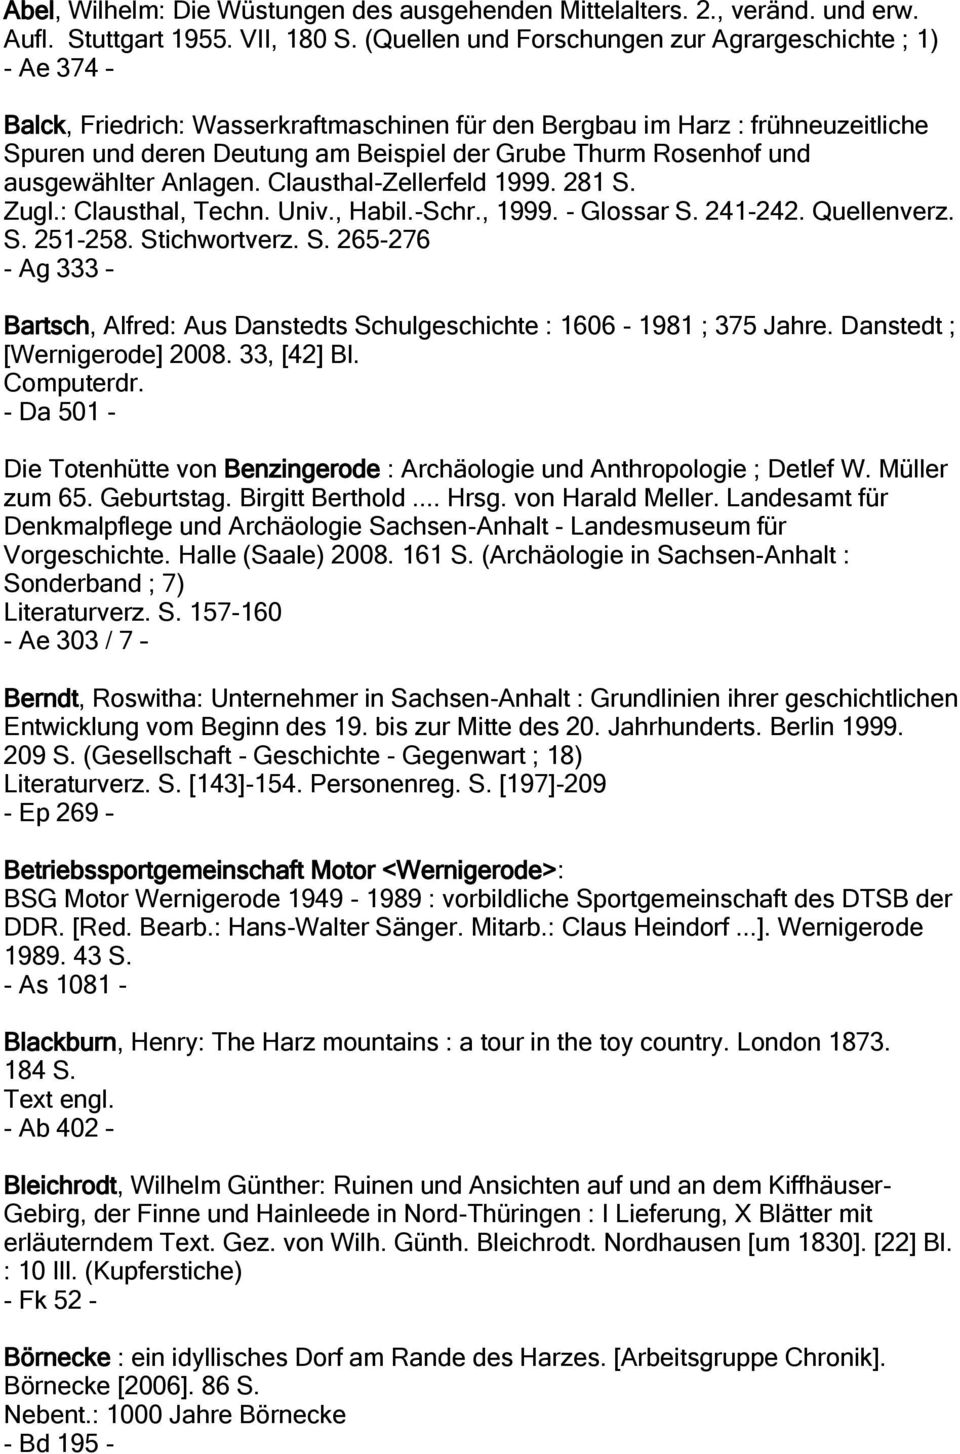 Rosenhof und ausgewählter Anlagen. Clausthal-Zellerfeld 1999. 281 S. Zugl.: Clausthal, Techn. Univ., Habil.-Schr., 1999. - Glossar S. 241-242. Quellenverz. S. 251-258. Stichwortverz. S. 265-276 - Ag 333 Bartsch, Alfred: Aus Danstedts Schulgeschichte : 1606-1981 ; 375 Jahre.